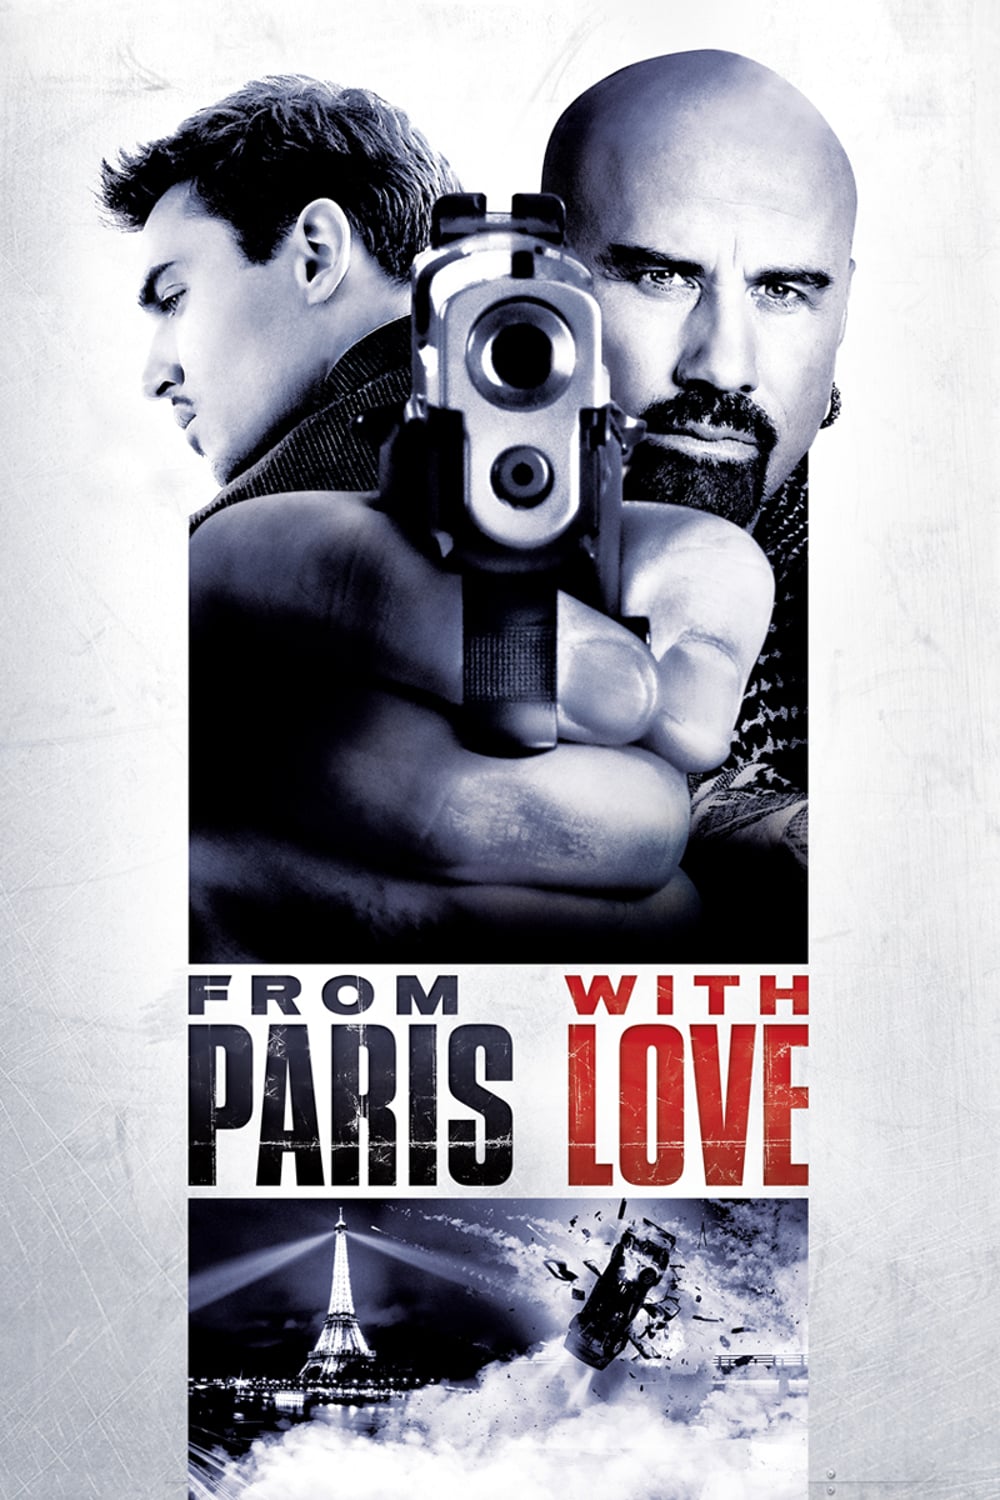 Plakat von "From Paris with Love"